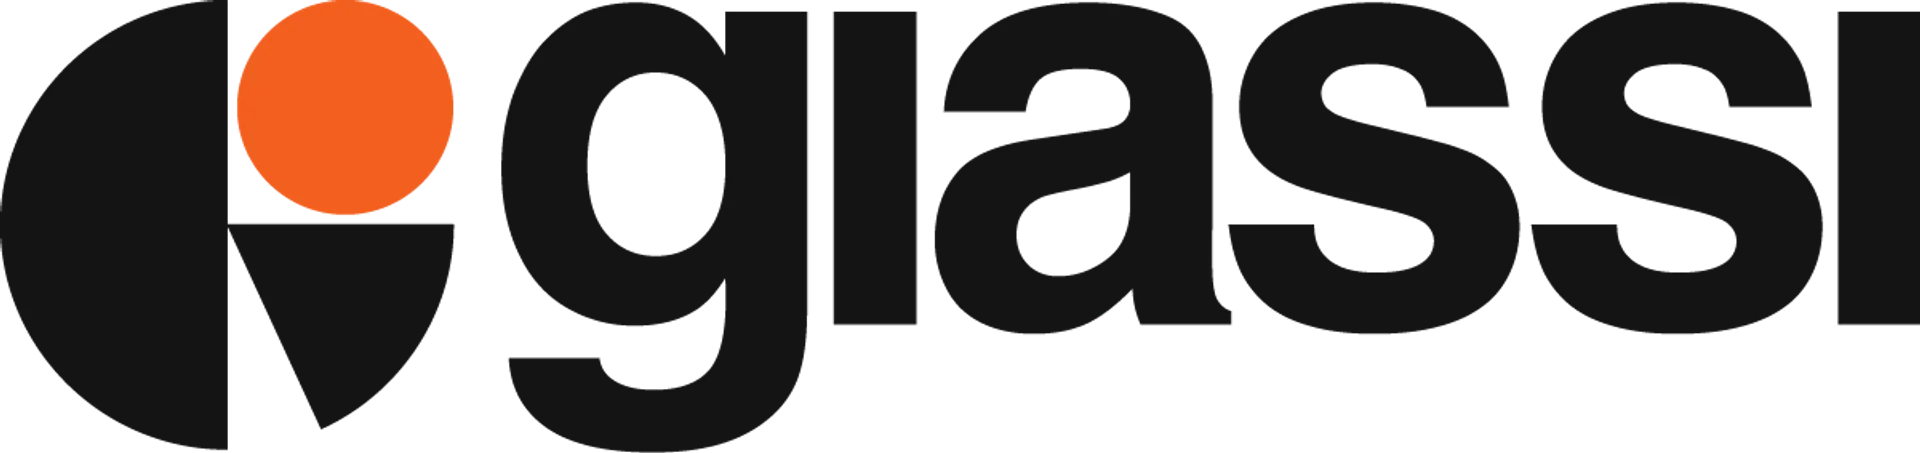 GIASSI logo